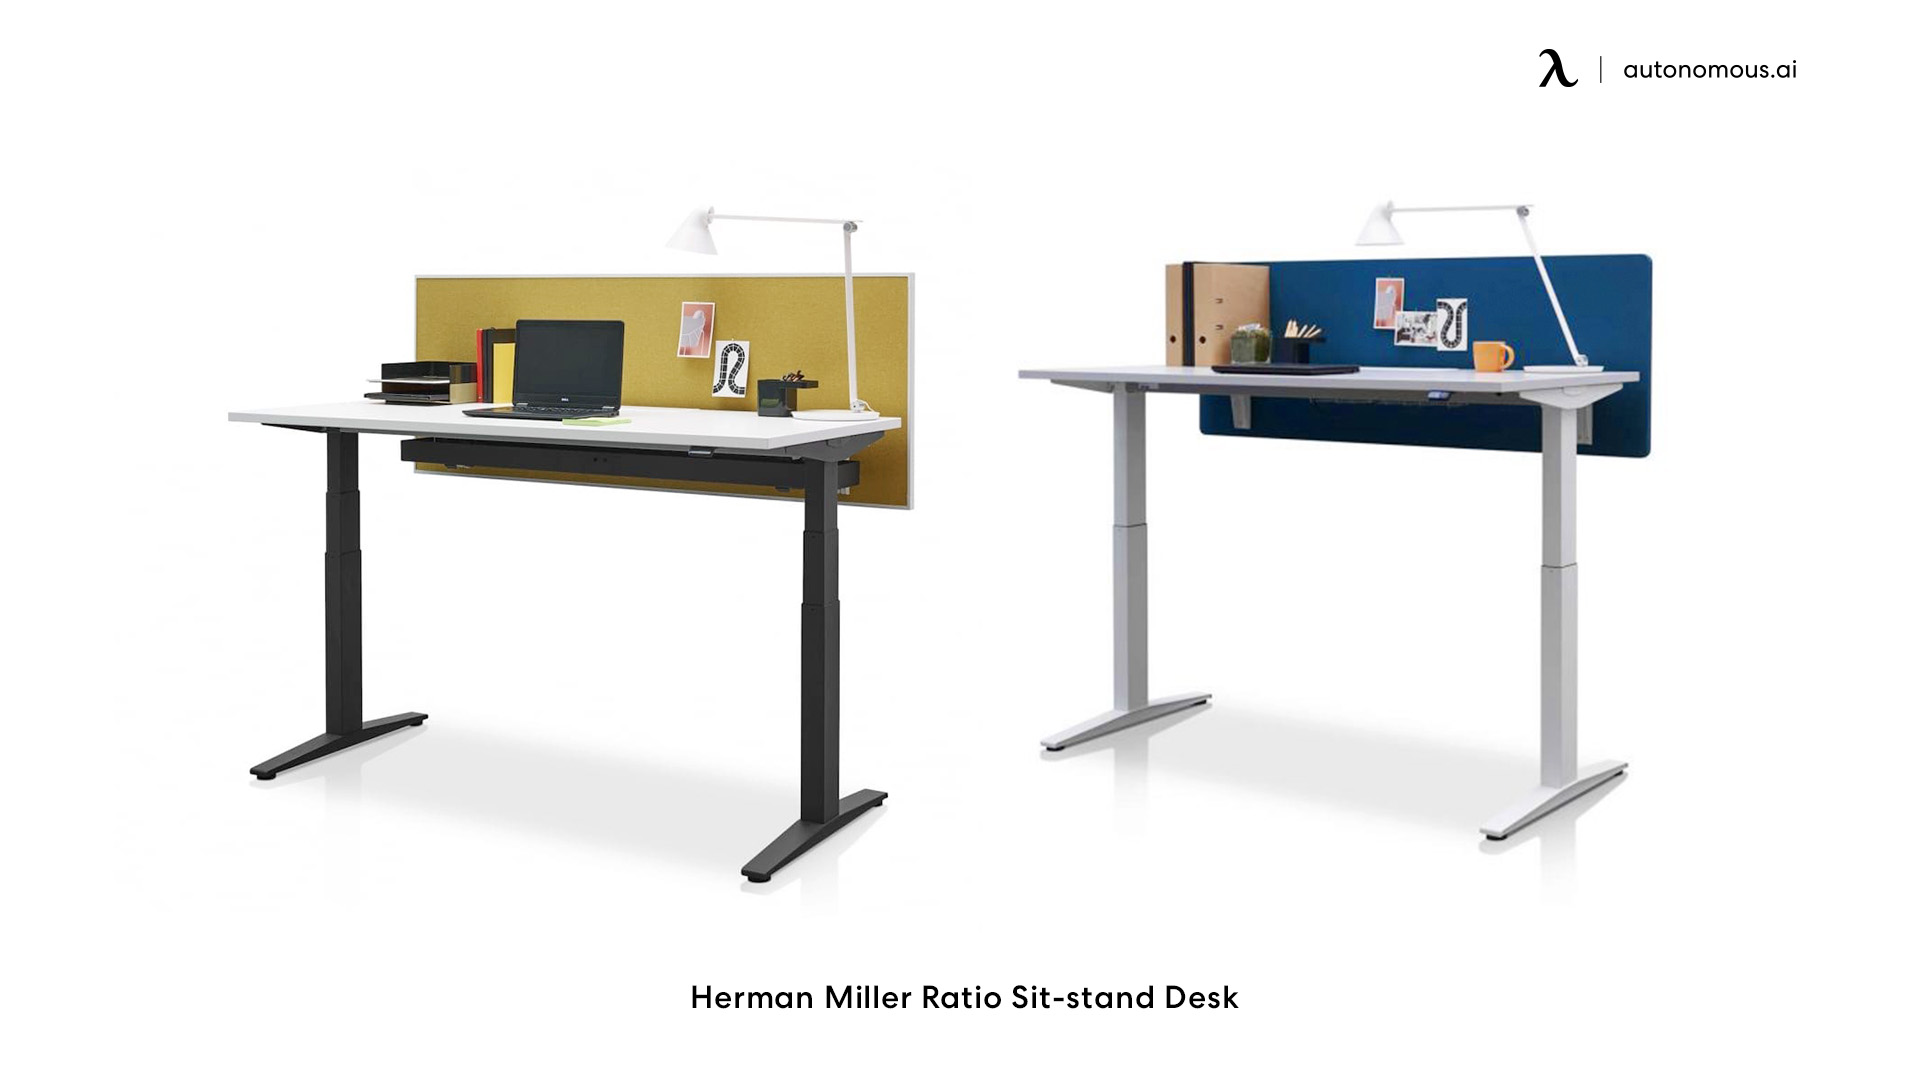 Herman Miller's Ratio adjustable office desk